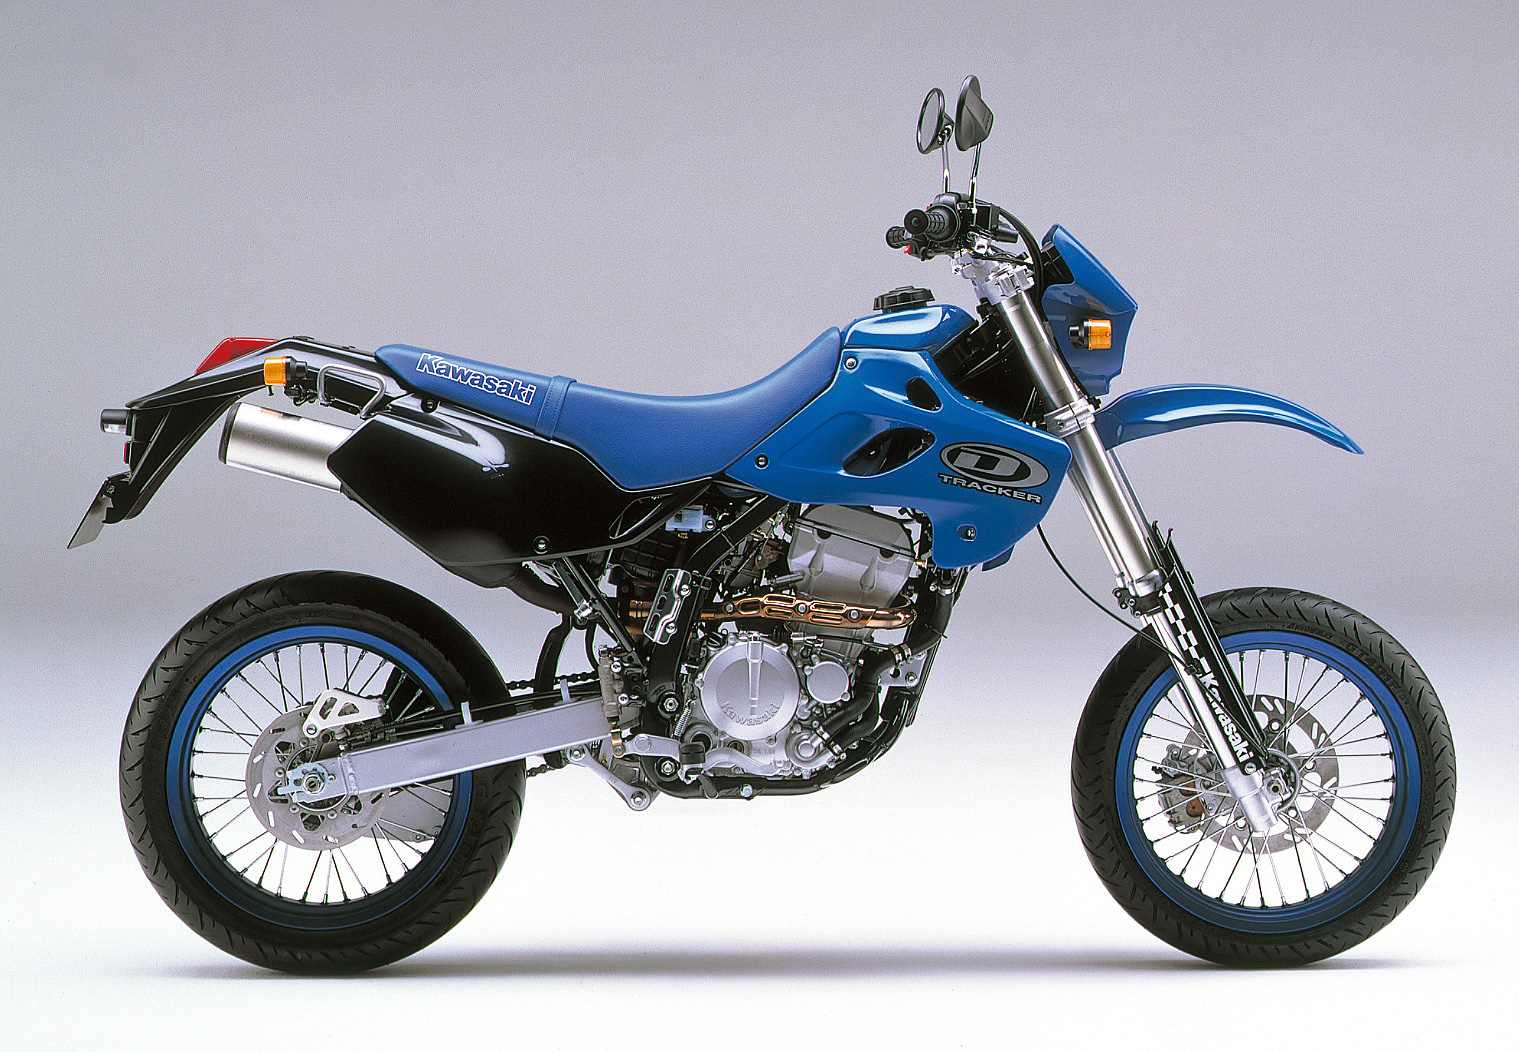 Kawasaki klx400 |300